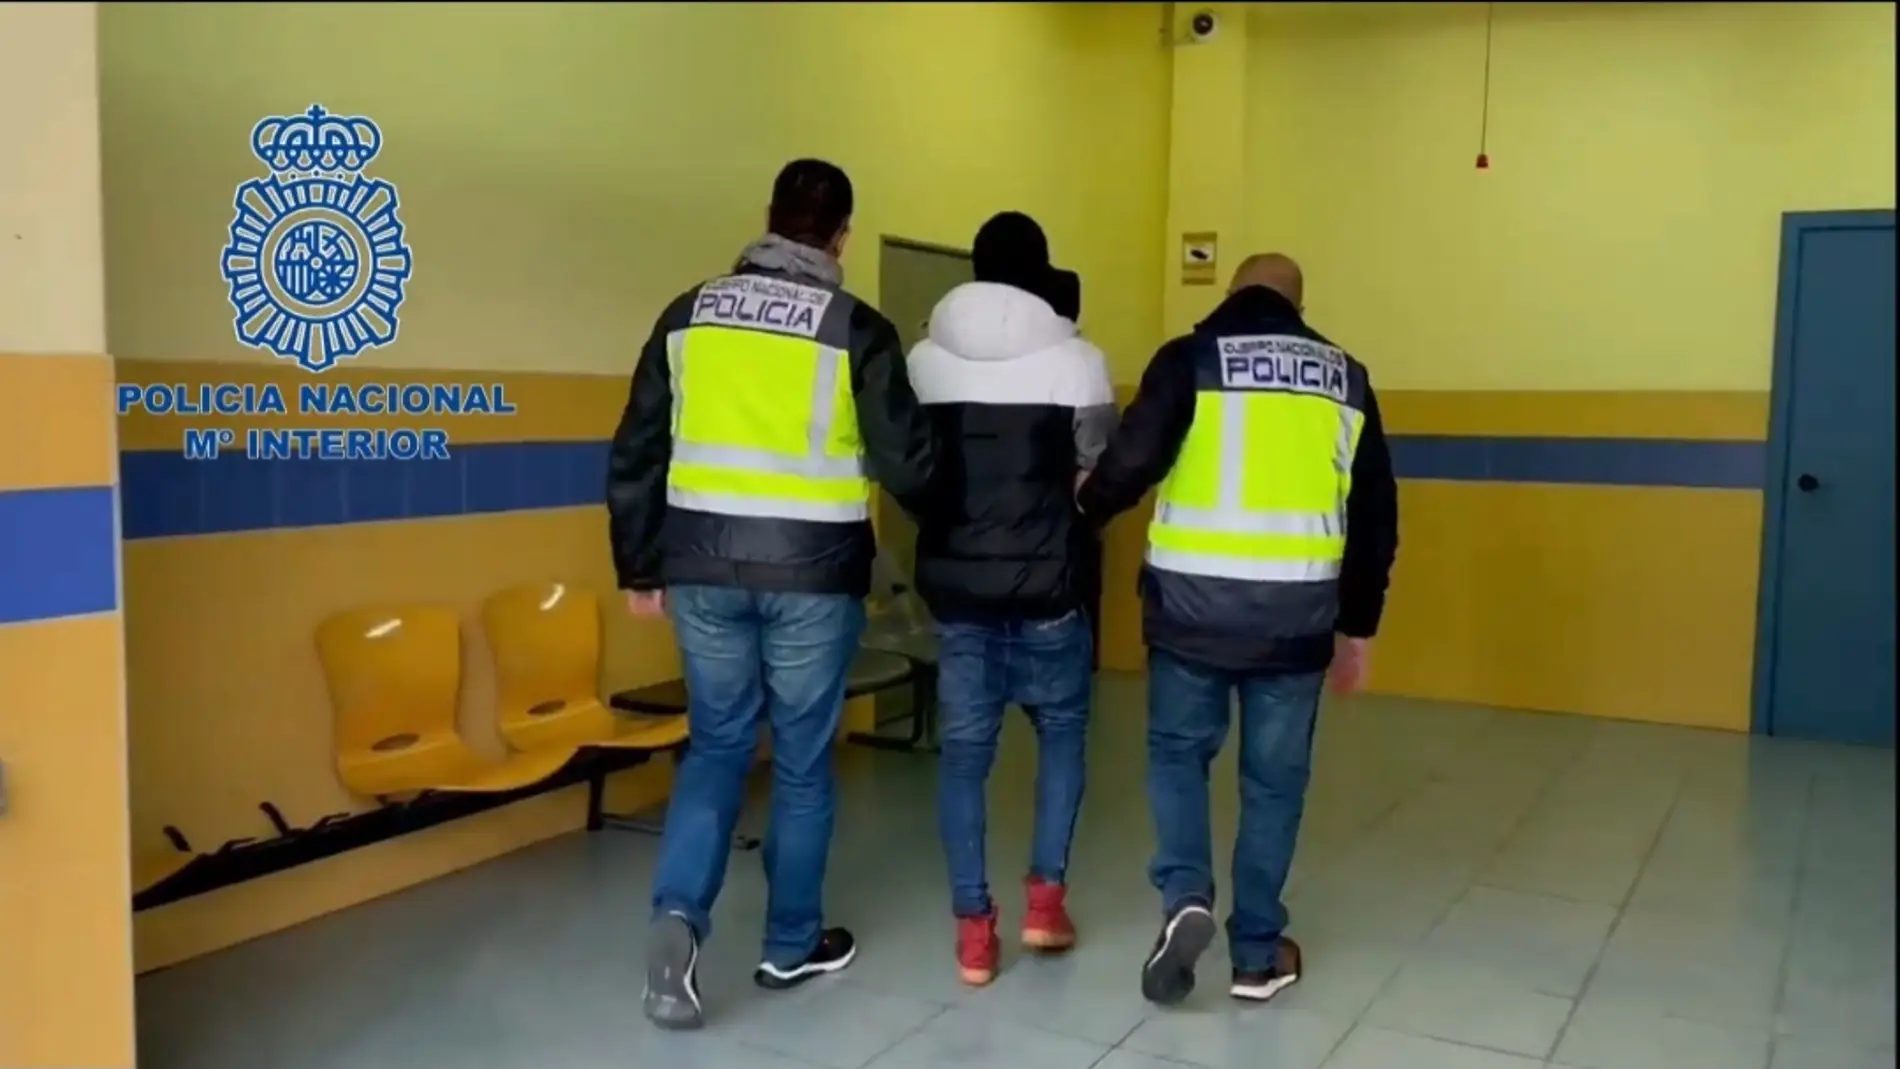 La Policía Nacional en Asturias da por desarticulado al grupo criminal Trinitarios